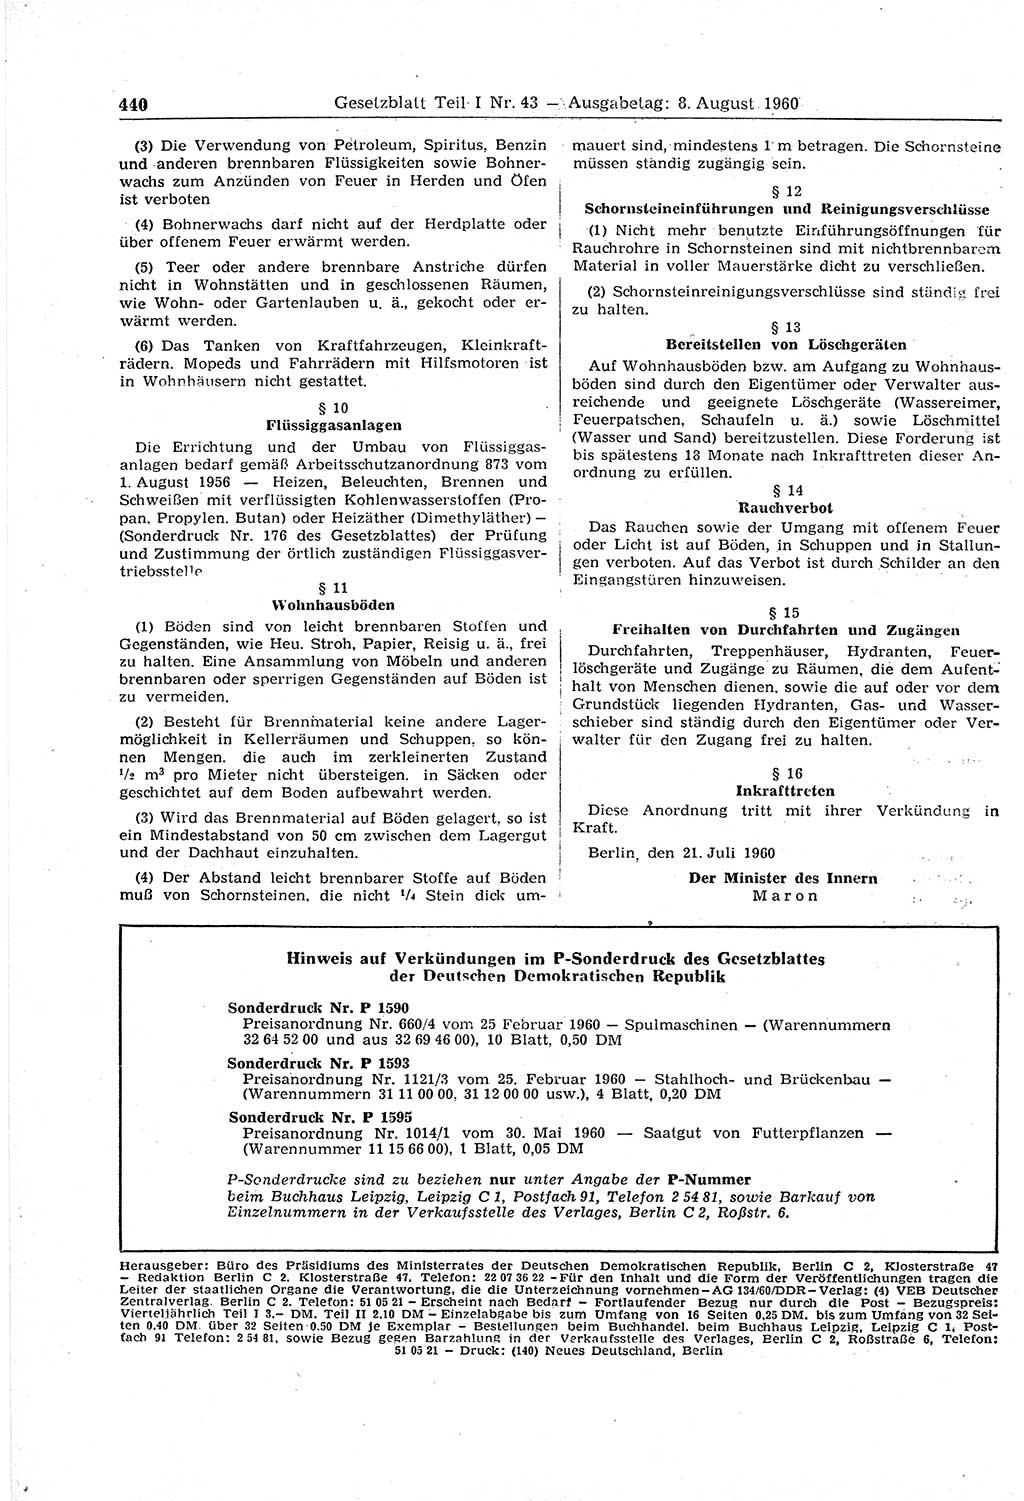 Gesetzblatt (GBl.) der Deutschen Demokratischen Republik (DDR) Teil Ⅰ 1960, Seite 440 (GBl. DDR Ⅰ 1960, S. 440)